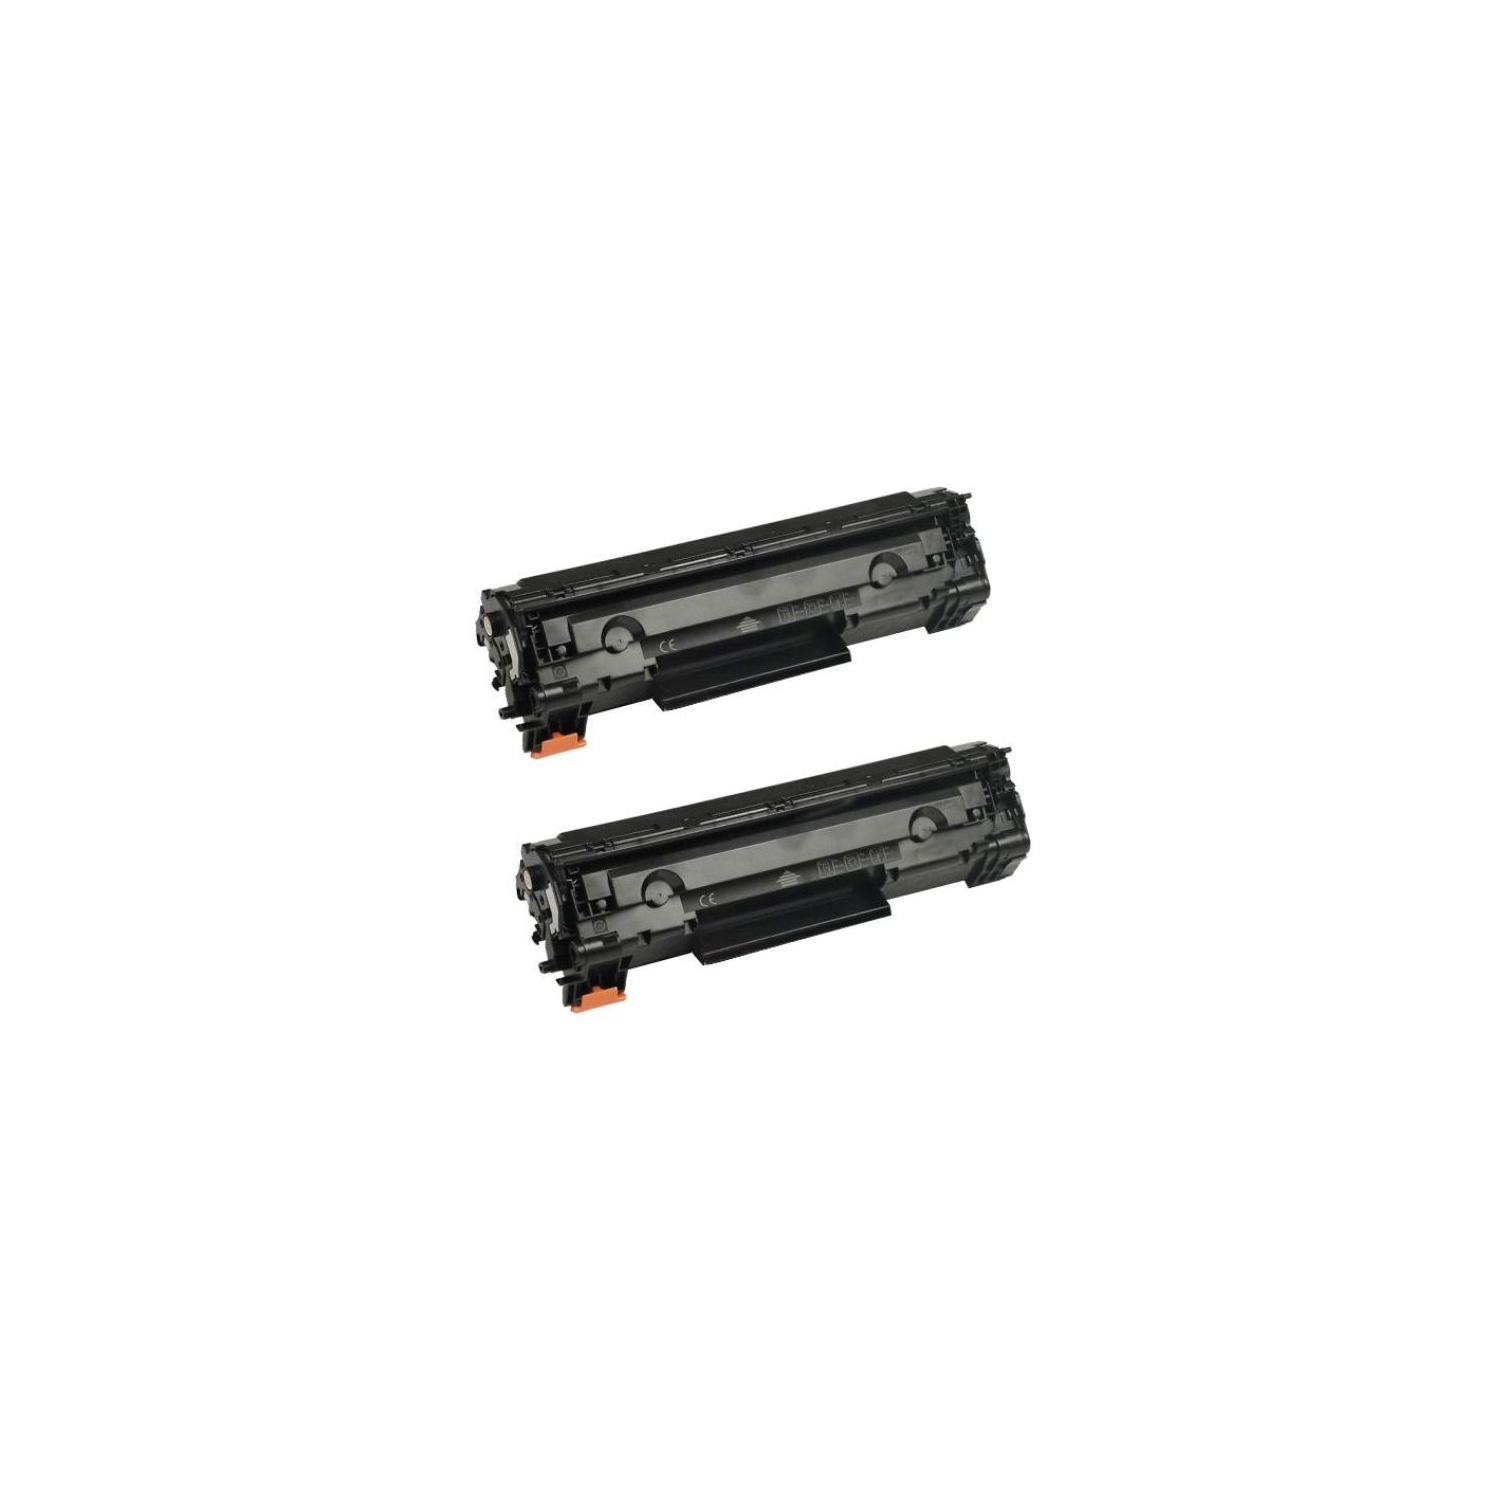 2Pk CF279A Toner Cartridges Compatible for HP 79A CF279A (79A) Black LaserJet Pro MFP M26a MFP M26nw M12a M12w